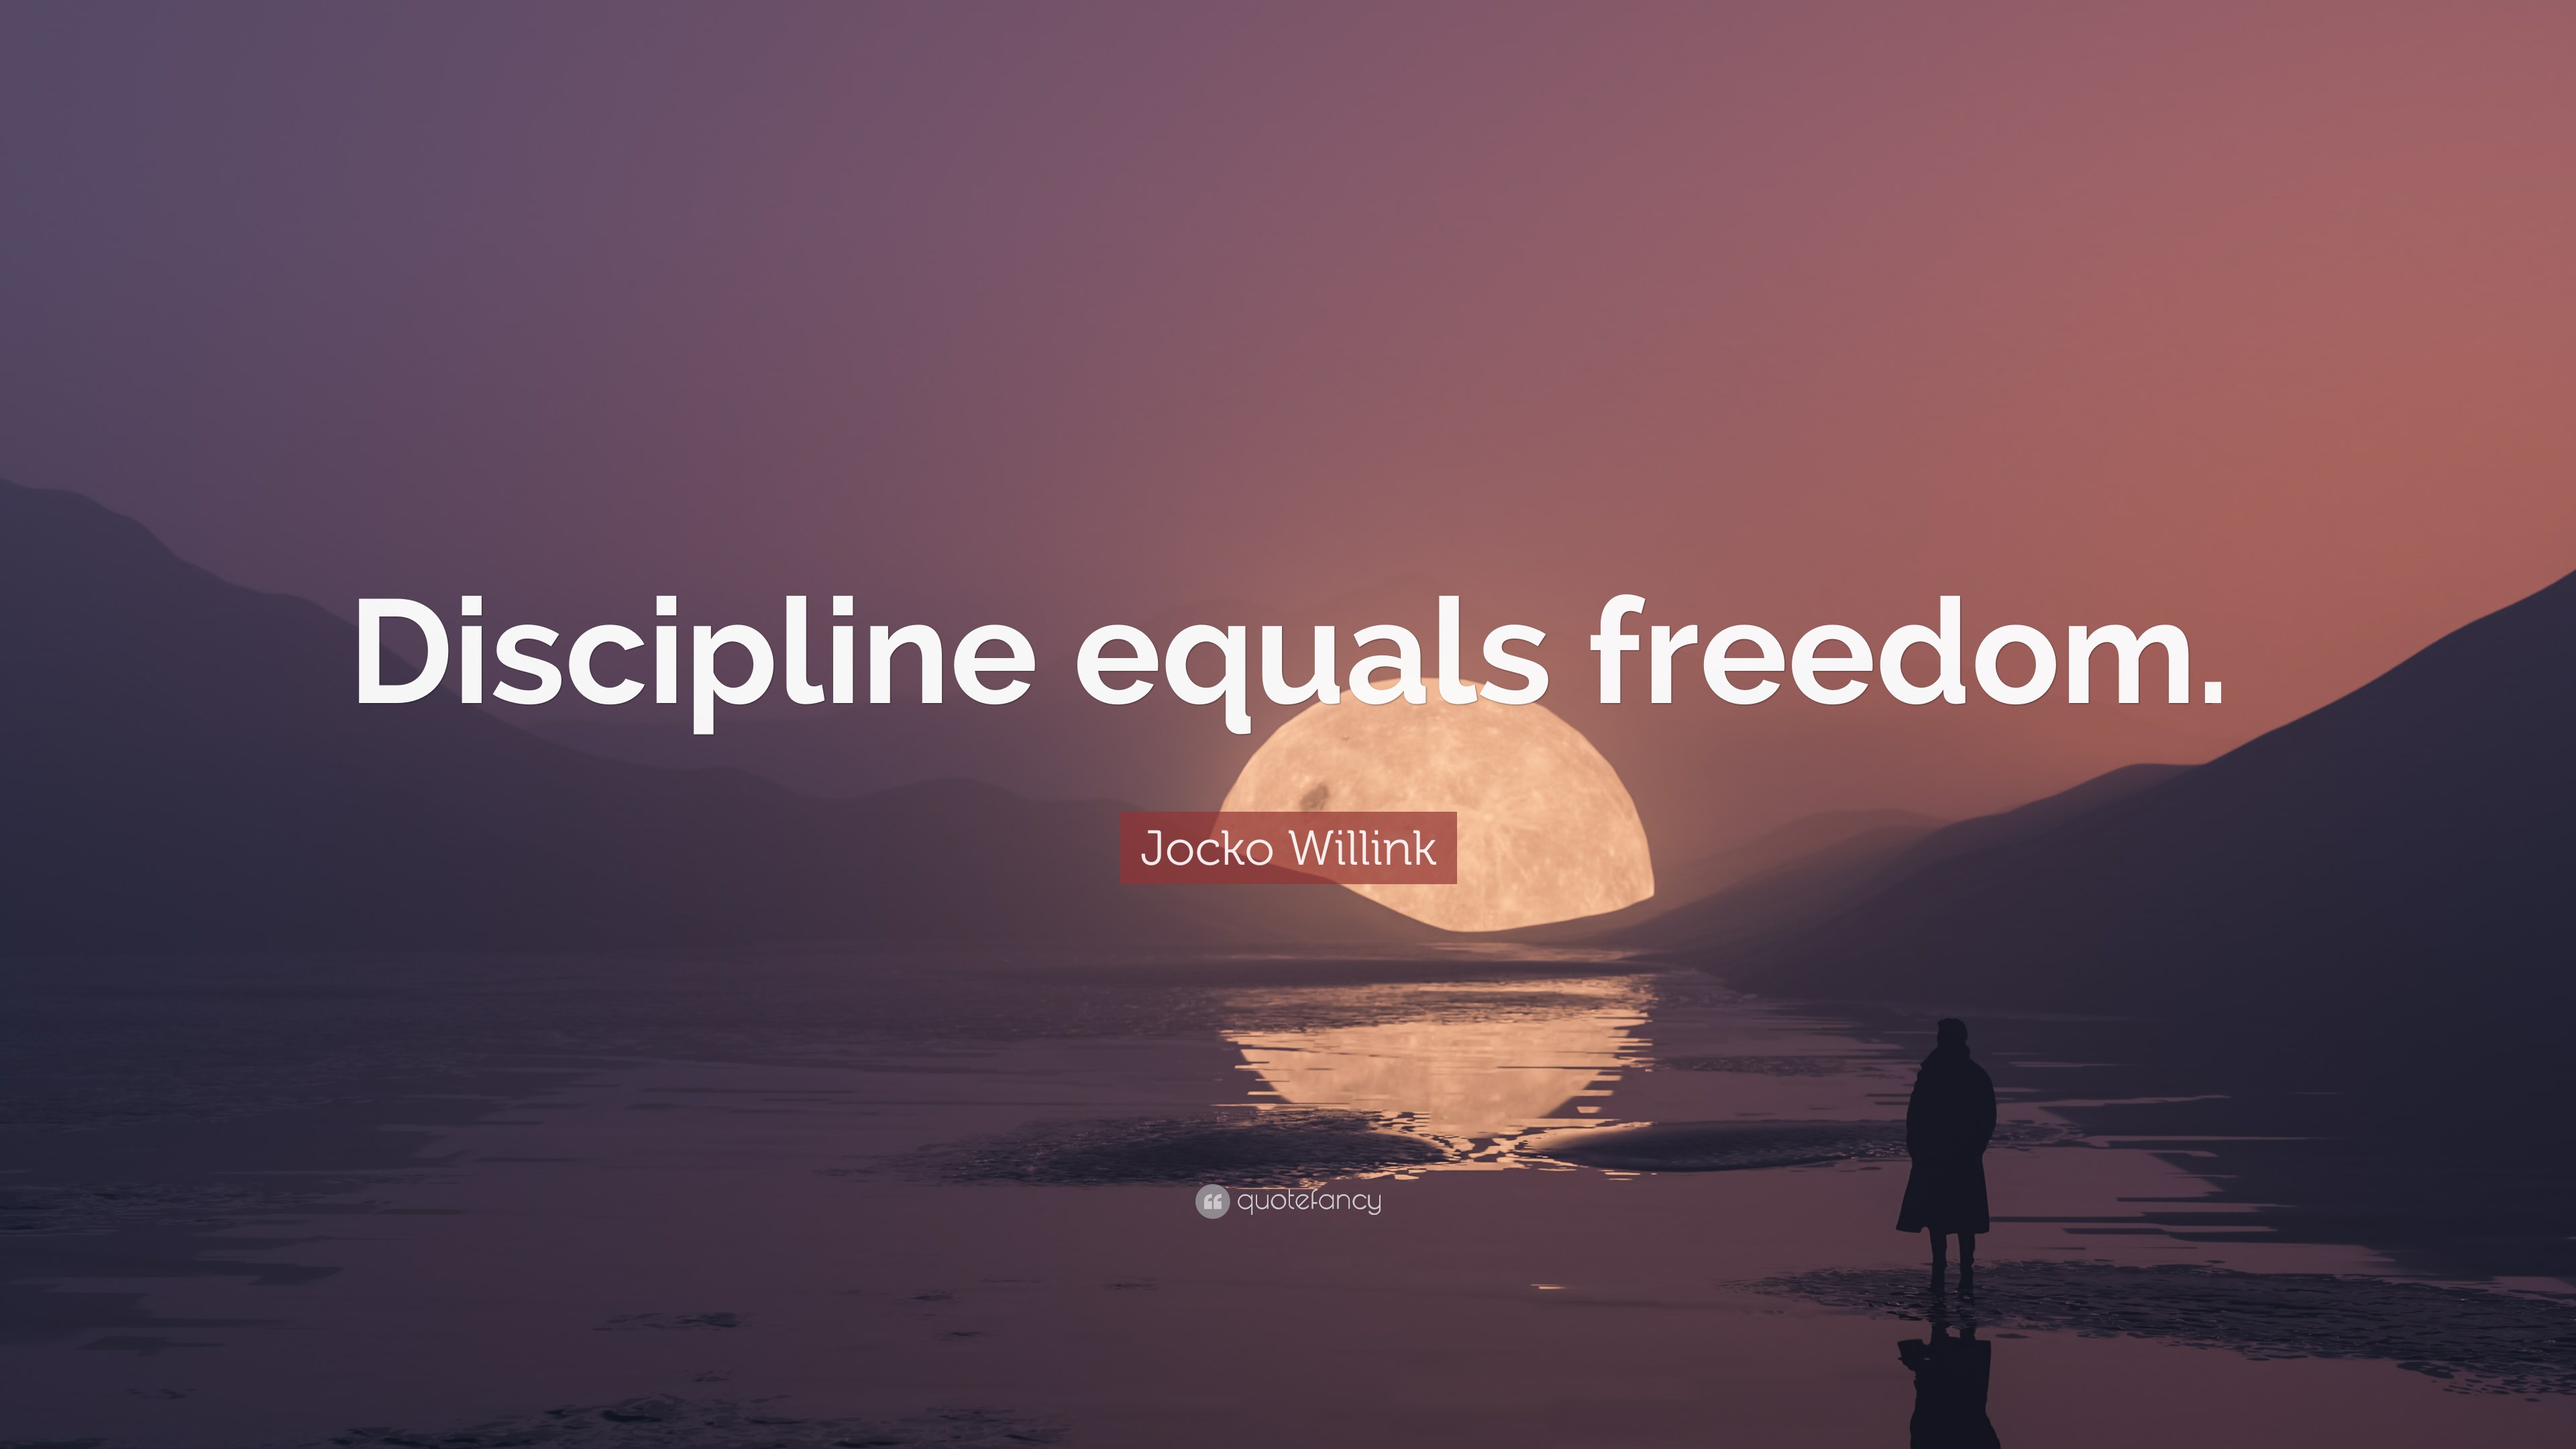 Jocko Willink Quote Discipline equals freedom